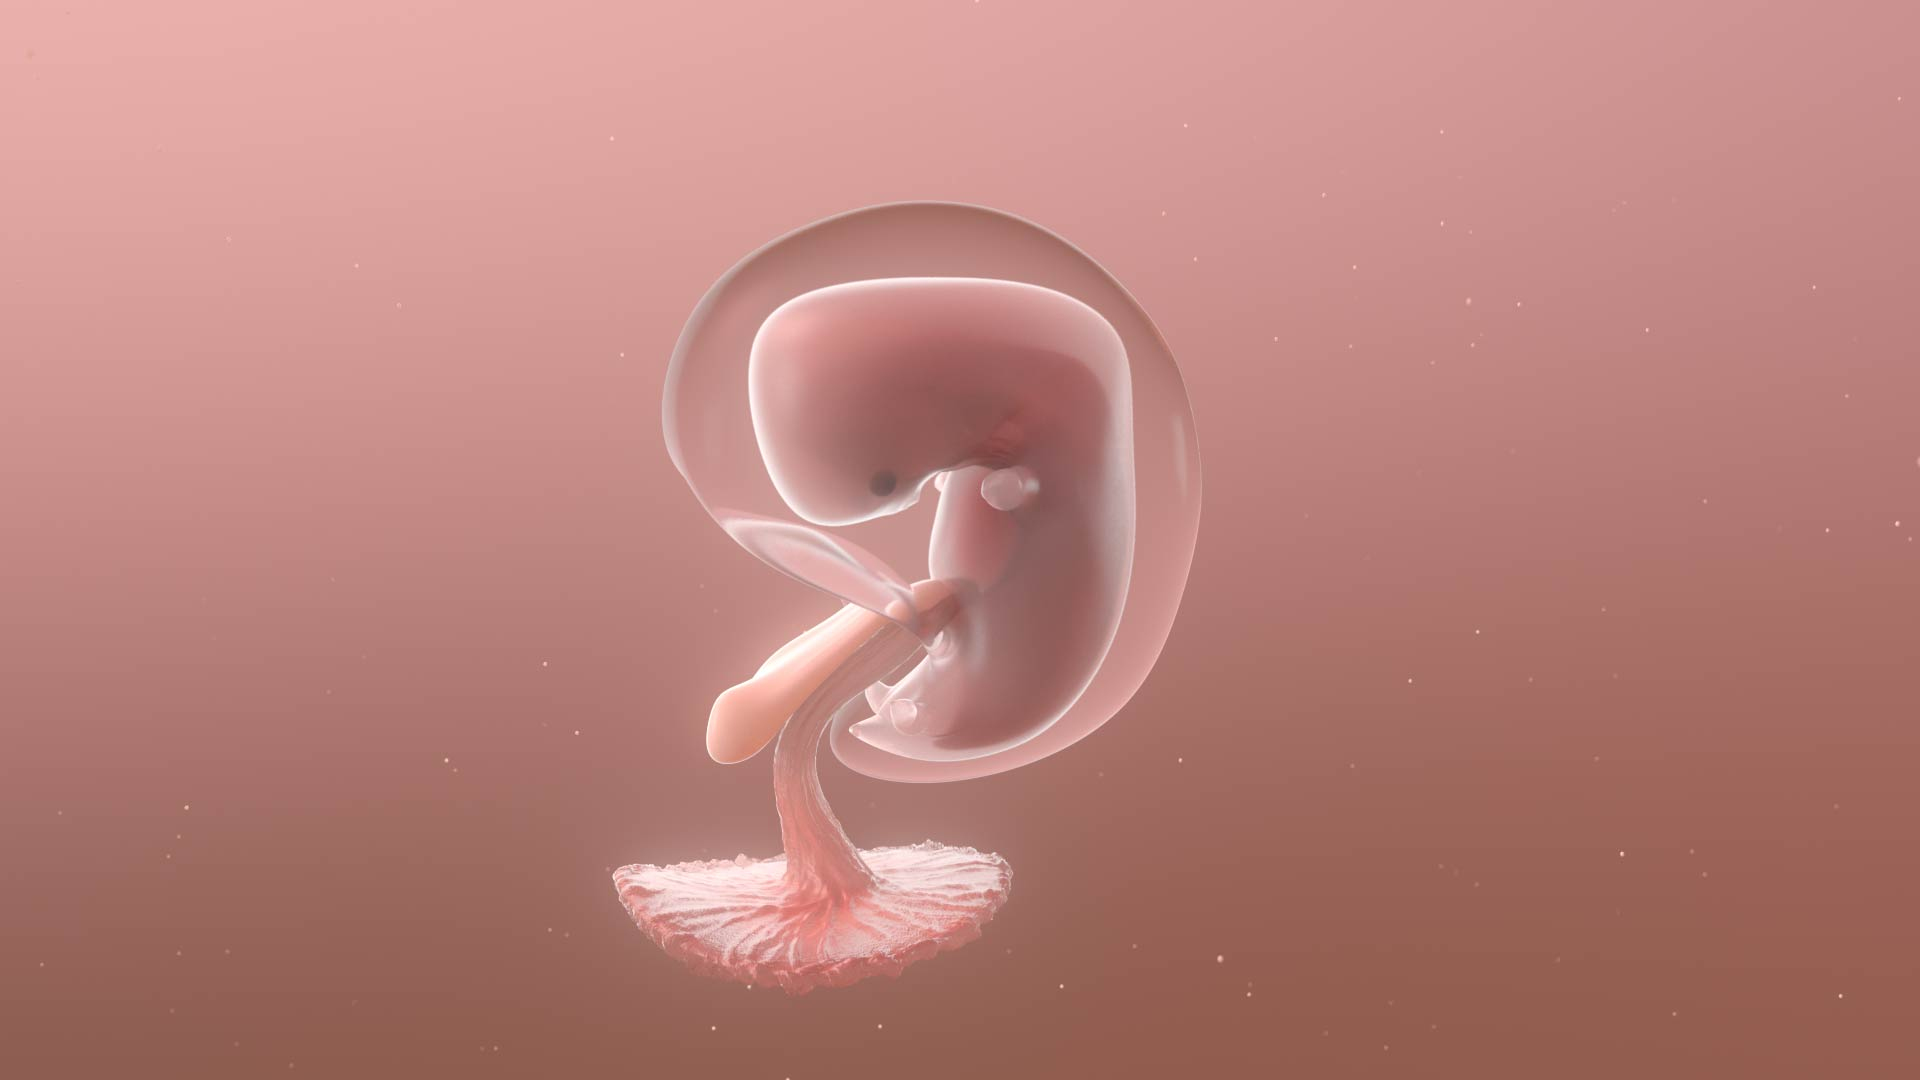 3D complete human egg fetus model https://p.turbosquid.com/ts-thumb/bx/NUeYJE/9U5Y9nxi/fetus/jpg/1590311350/1920x1080/turn_fit_q99/bc2b0e390e96cbe973681aa0ebbbd881b3b6f62a/fetus-1.jpg